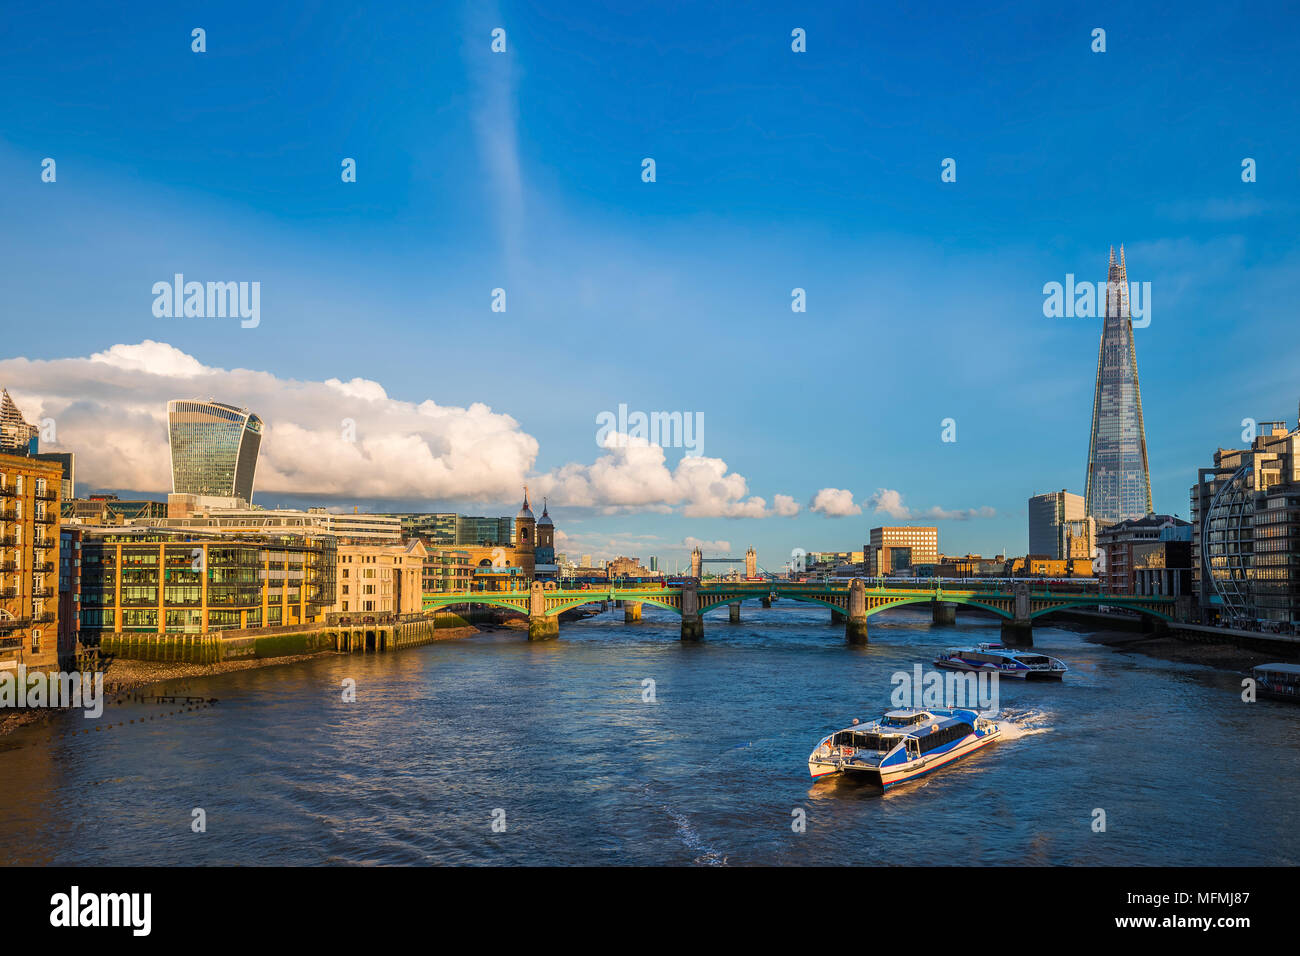 Londra, Inghilterra - imbarcazioni turistiche al tramonto sul fiume Tamigi con Southwark Bridge e il Tower Bridge e grattacieli in background Foto Stock